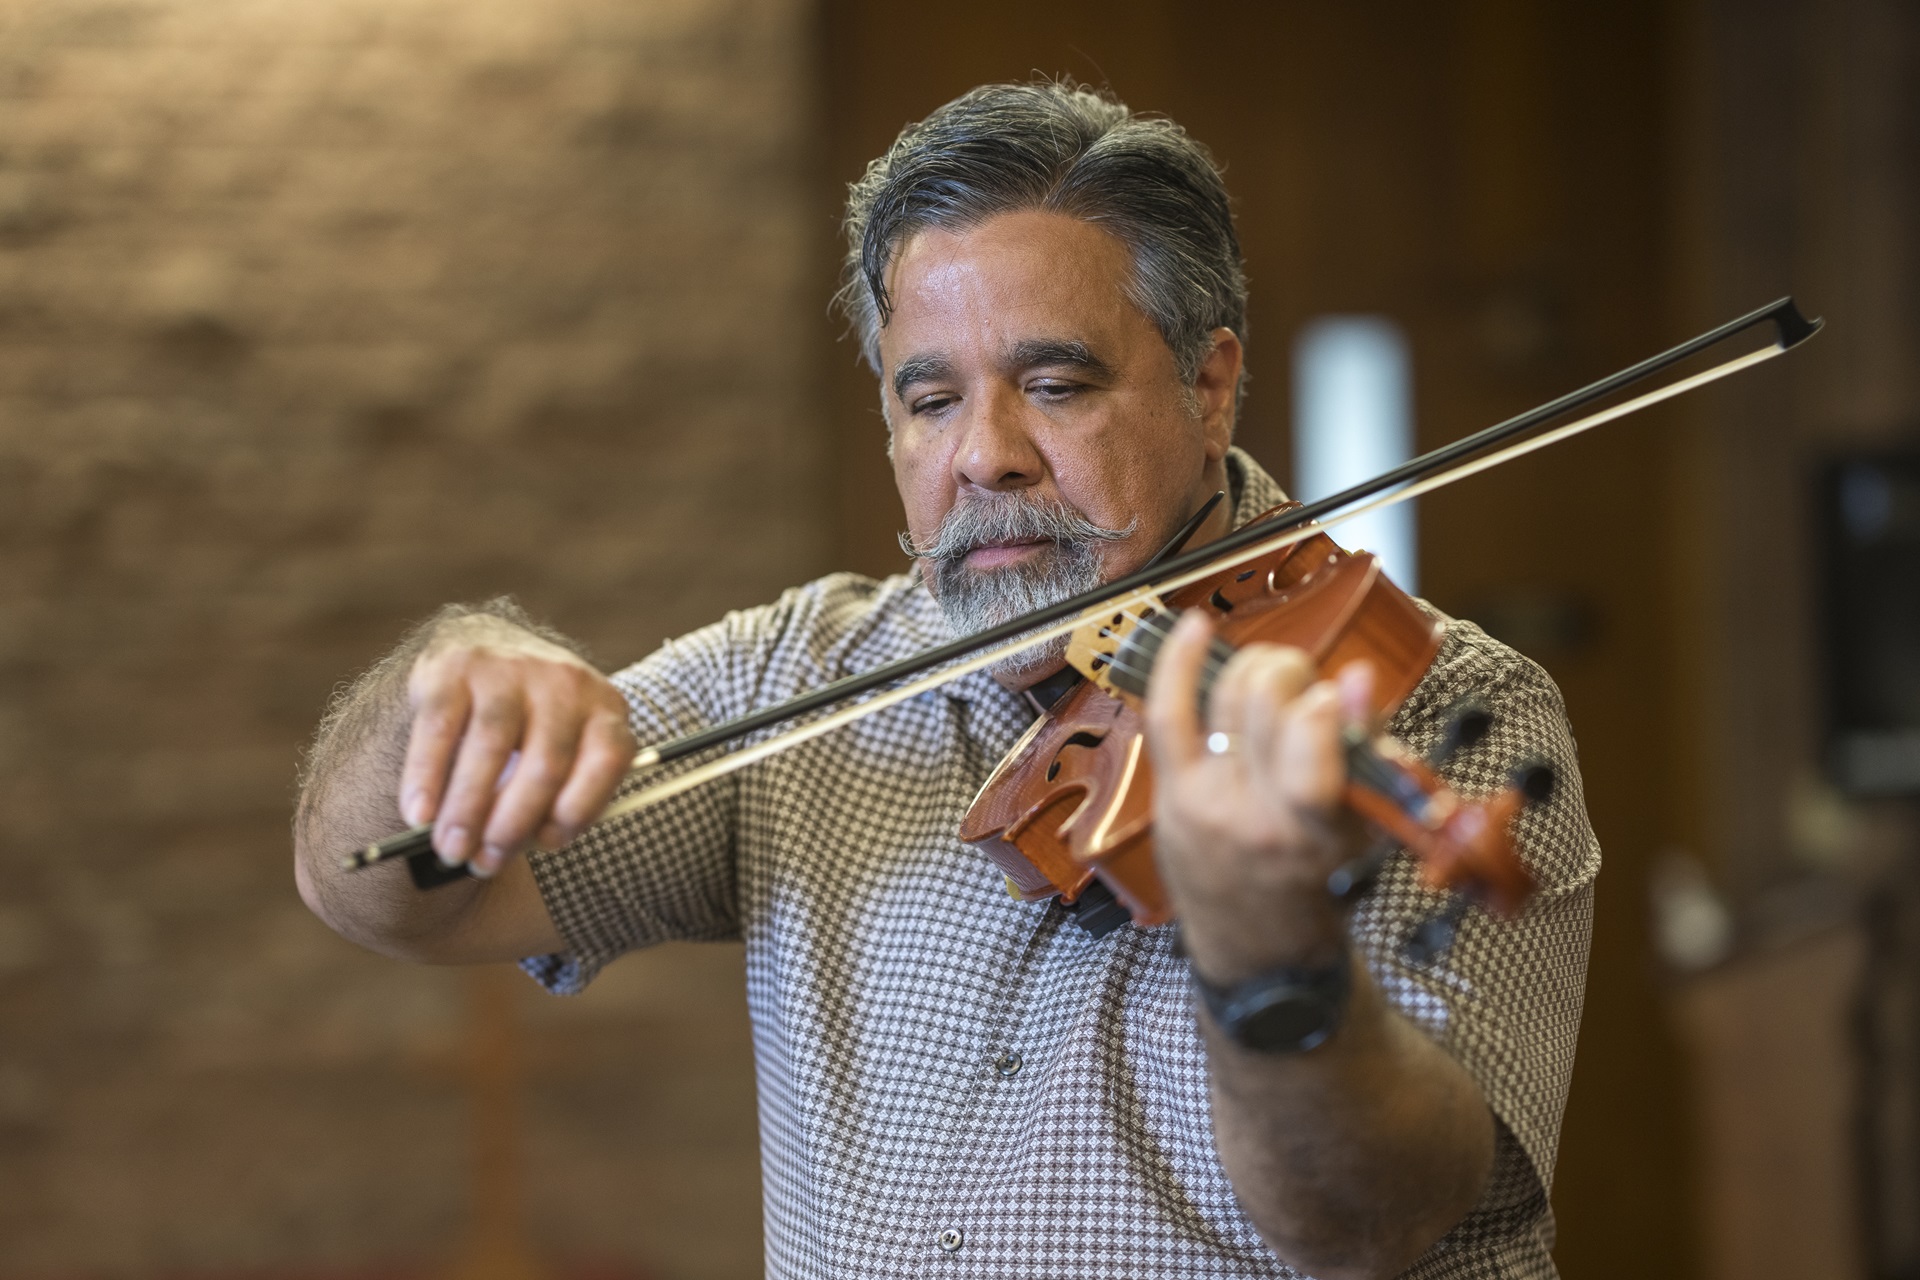 Raphael Pazo playing the violin